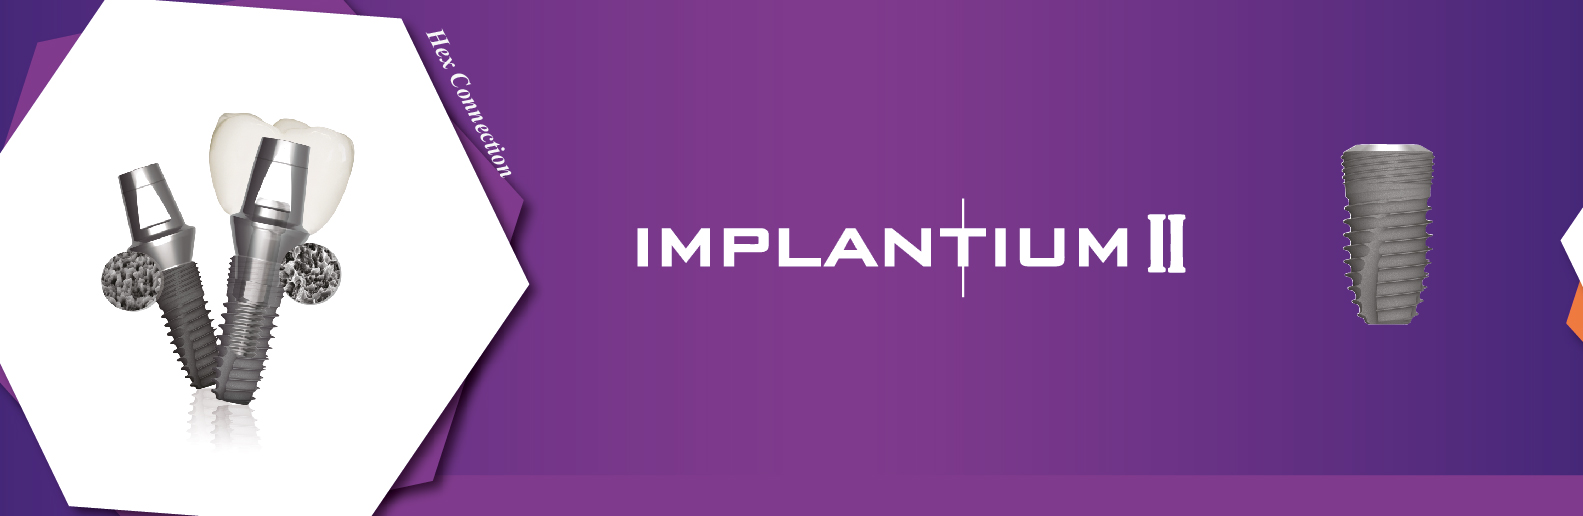 implantium